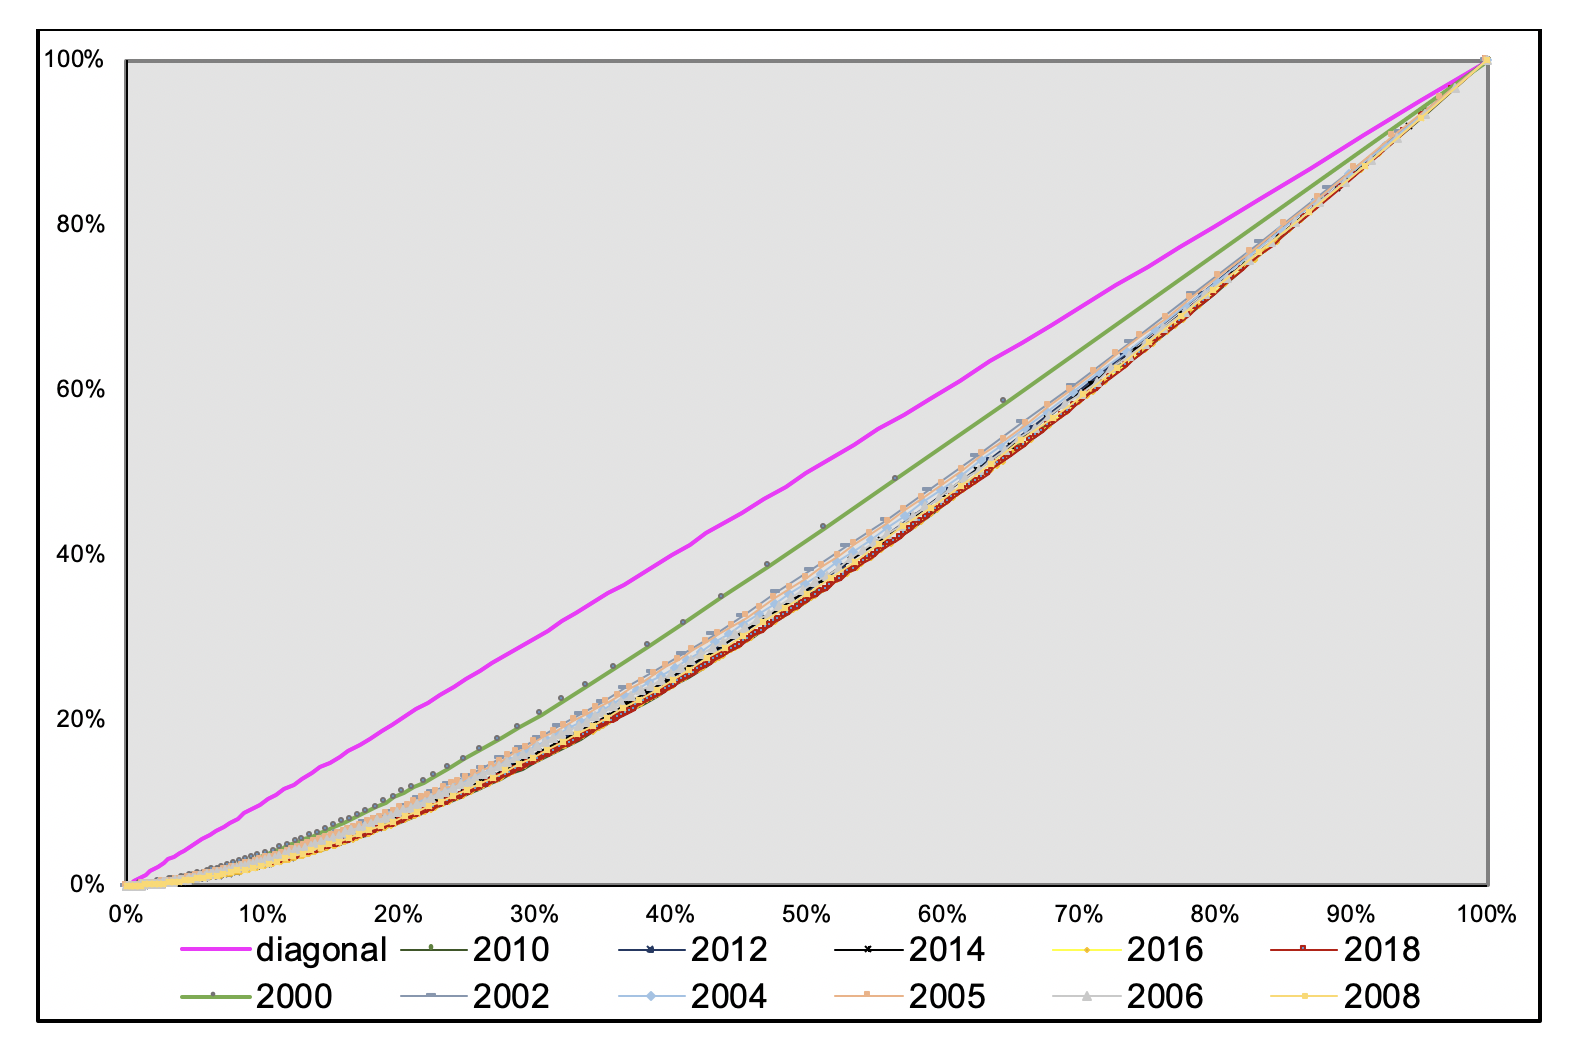 Curva de Lorenz para
la distribución del ingreso en hogares rurales de  
Quintana Roo, México (2000-2018)